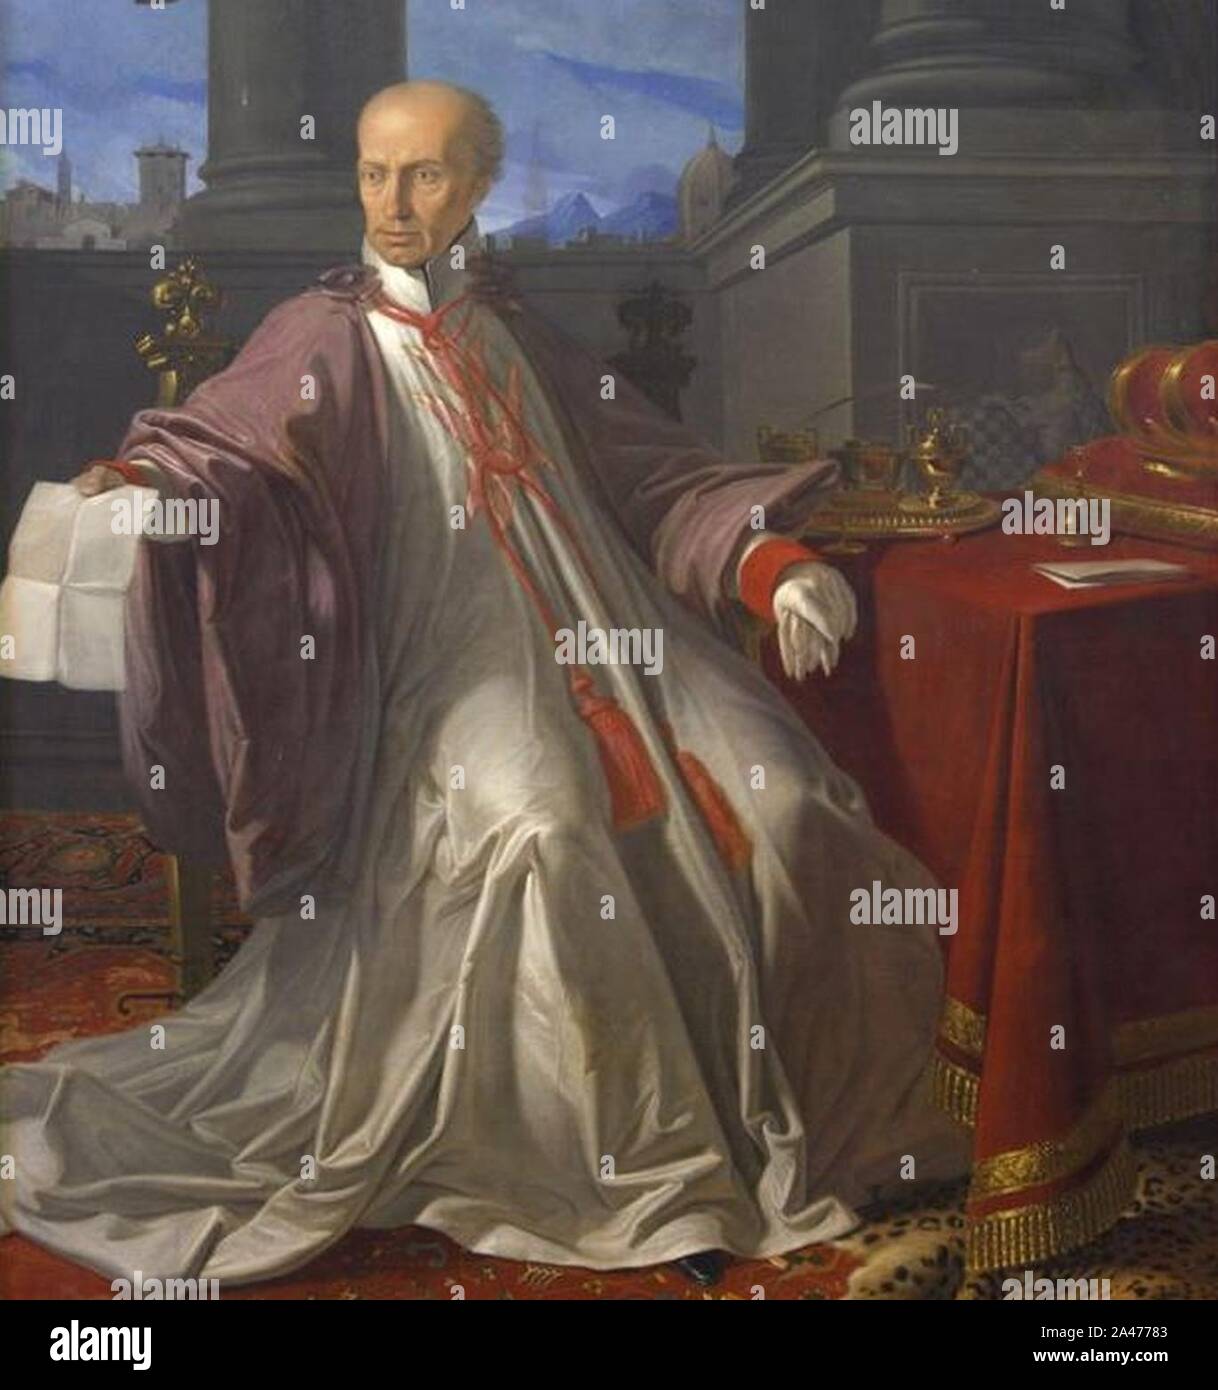 Ferdinando III di Toscana con l'abito da gran maestro dell'ordine di Santo Stefano. Stock Photo